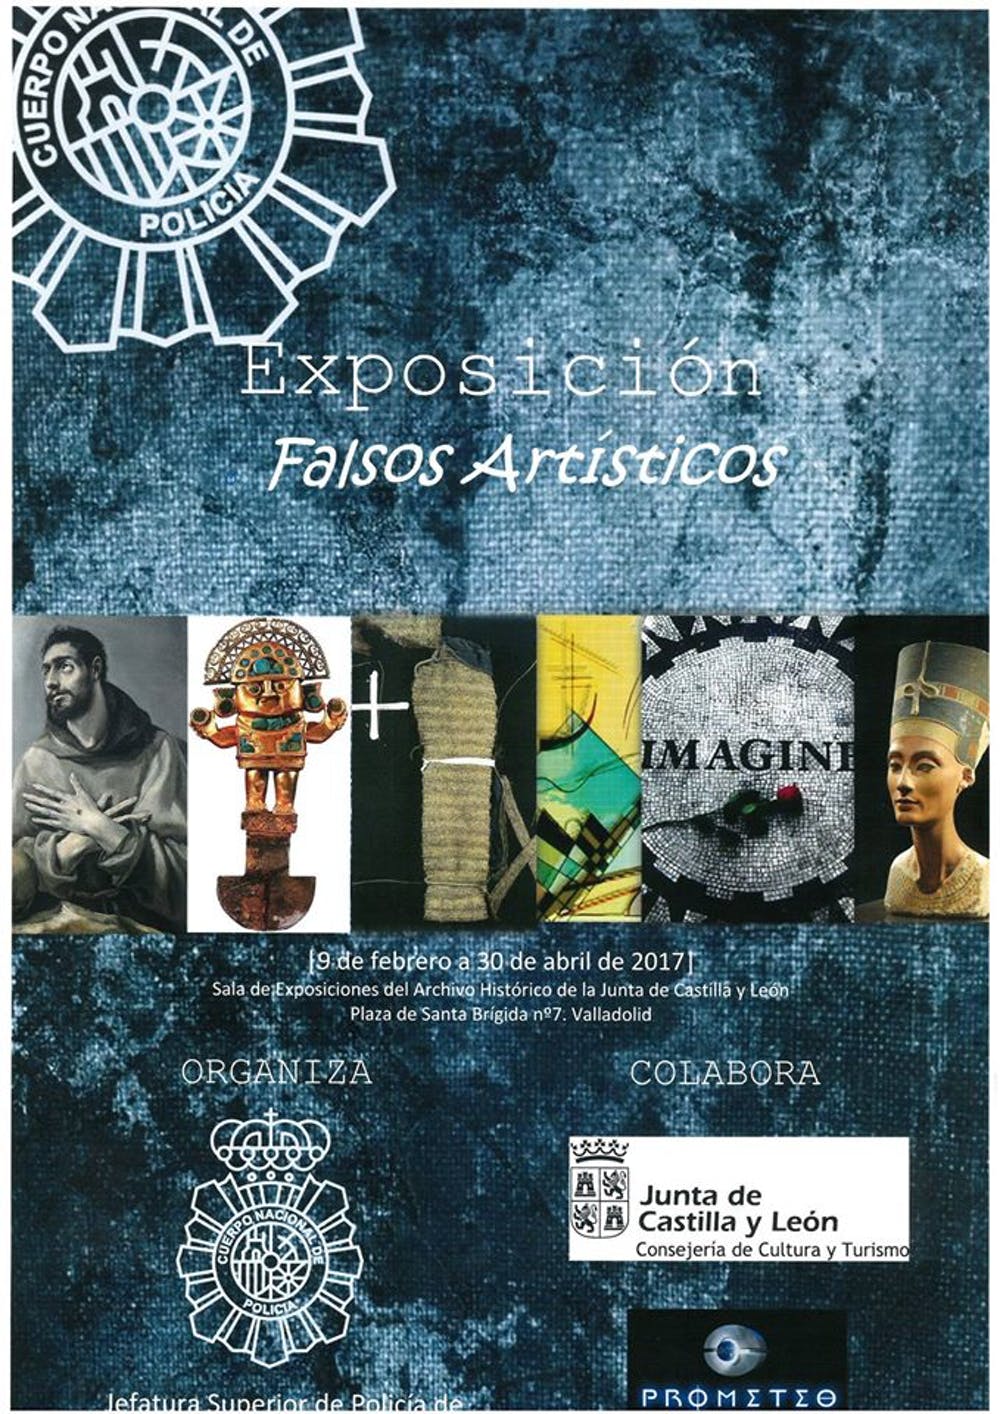 Cartel anunciador de la exposición ‘Falsos artísticos’ en Valladold en 2017.